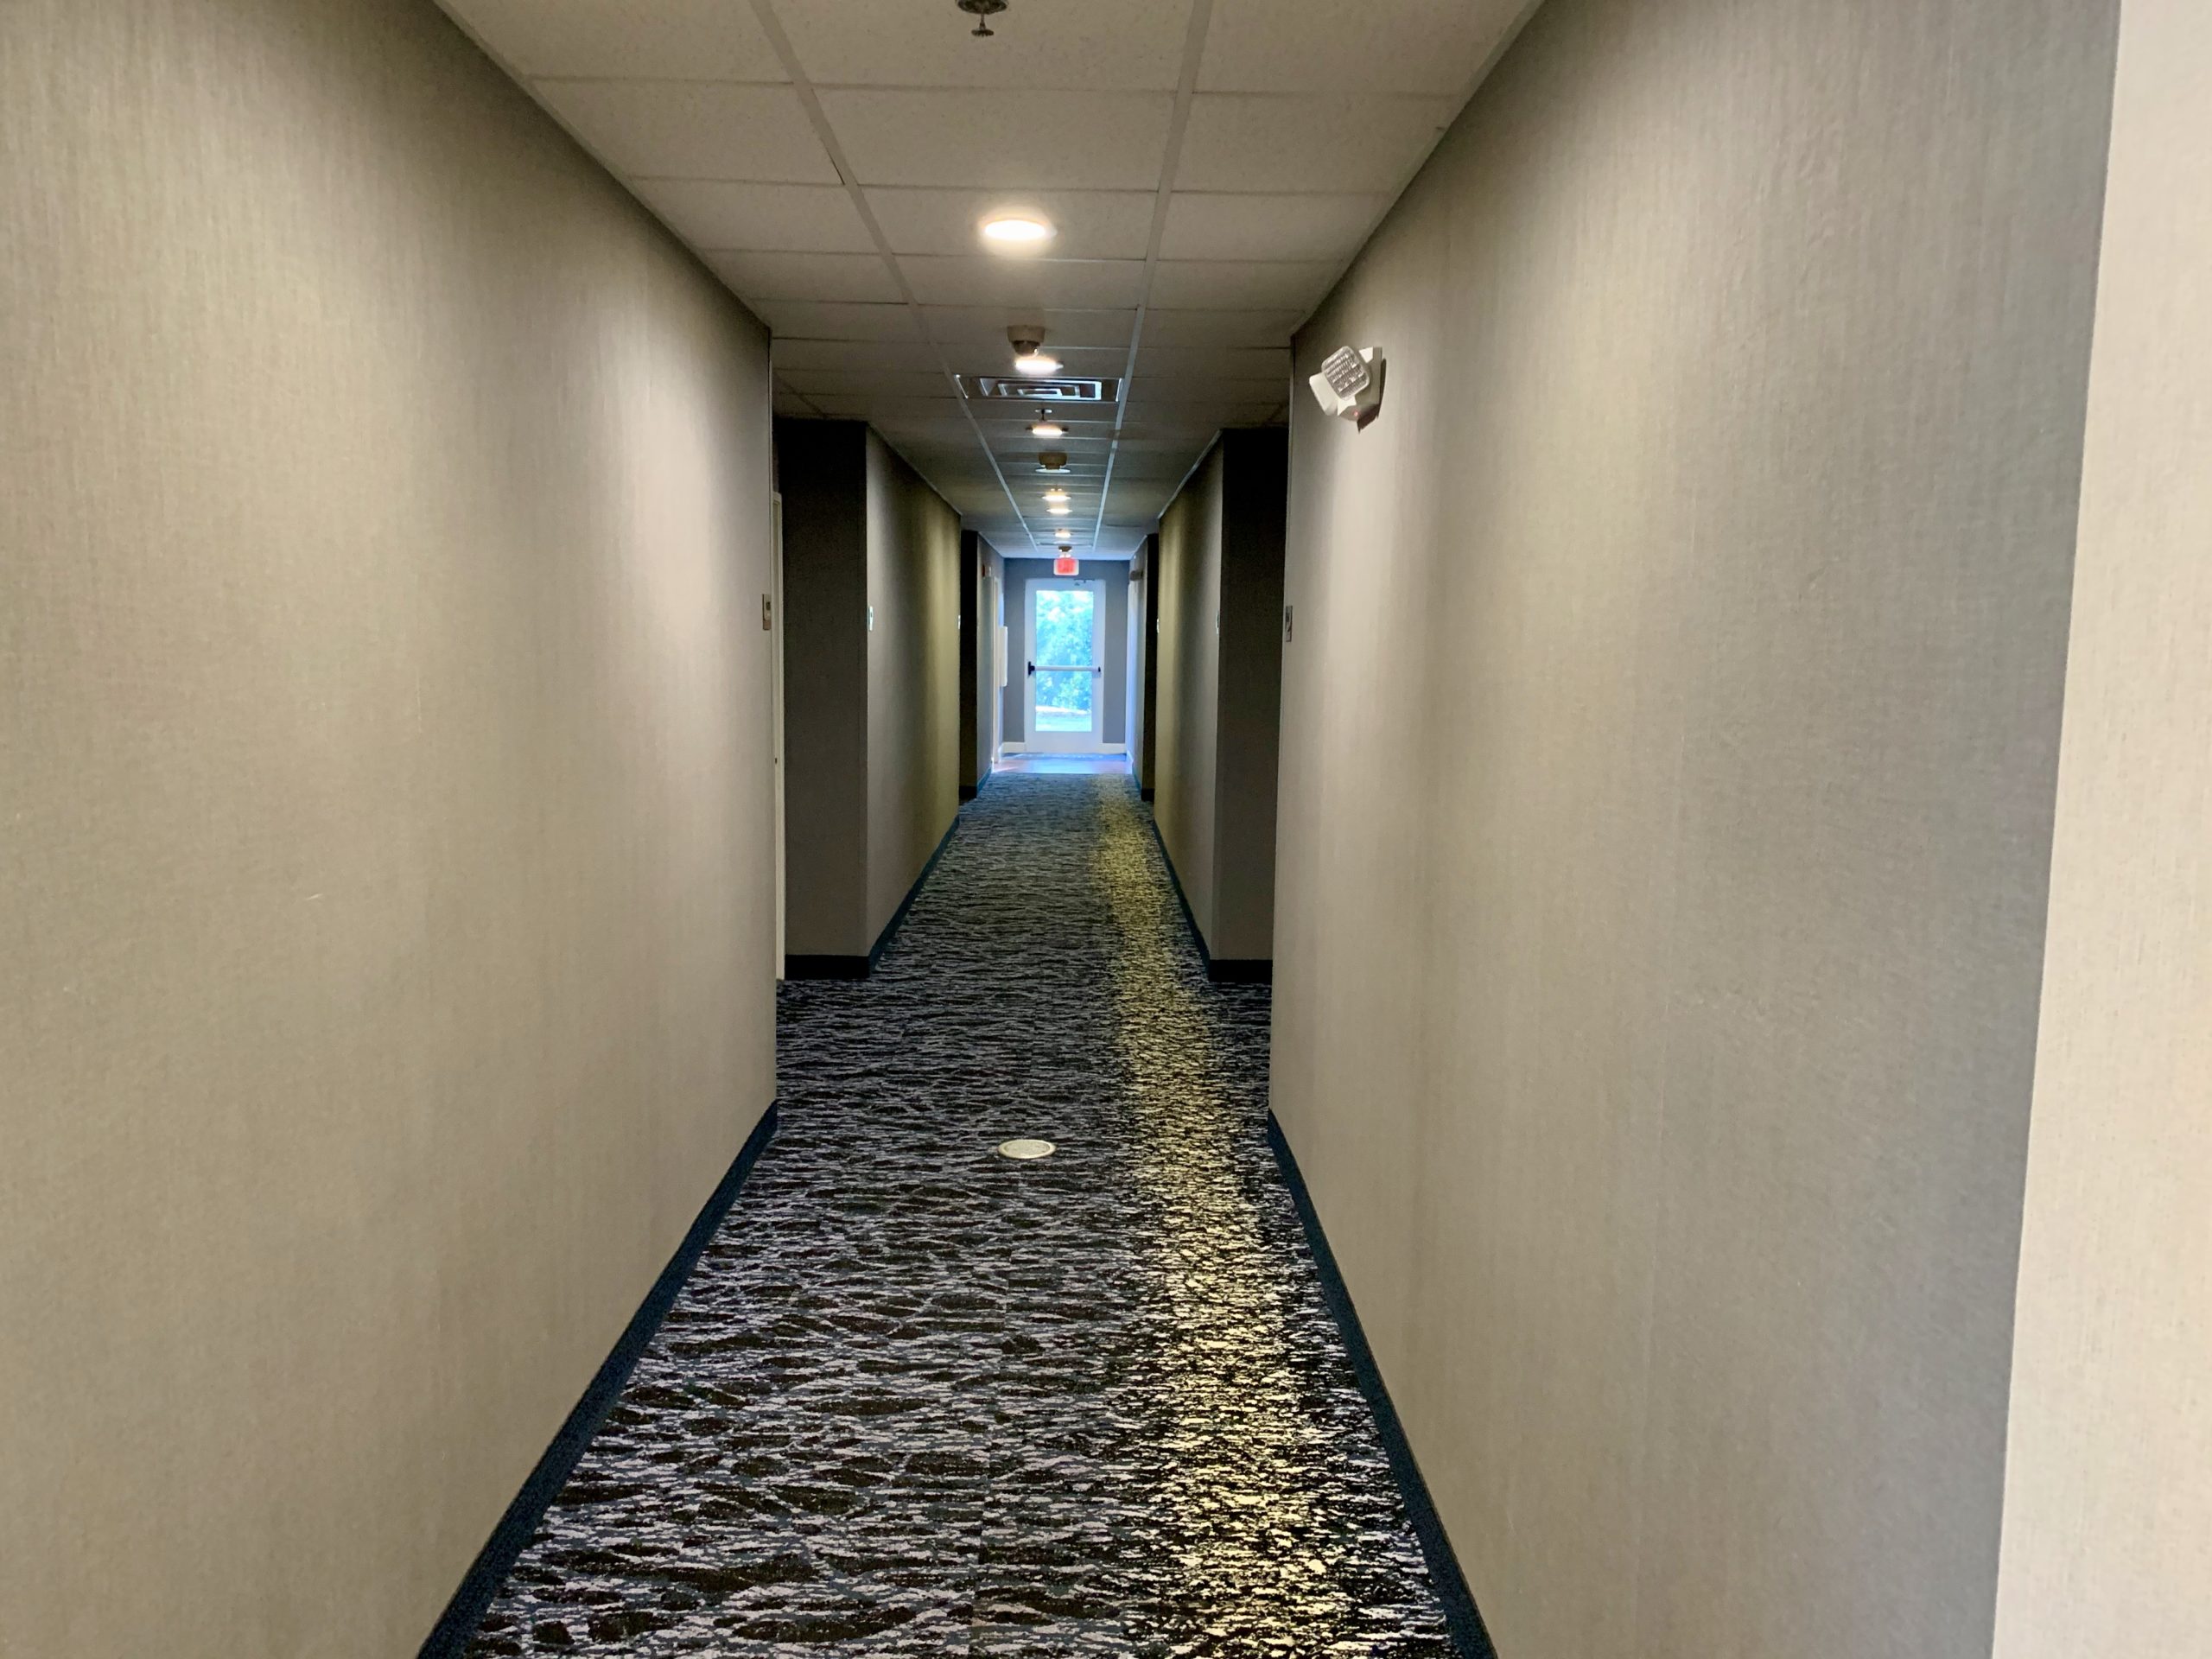 a hallway with a door open